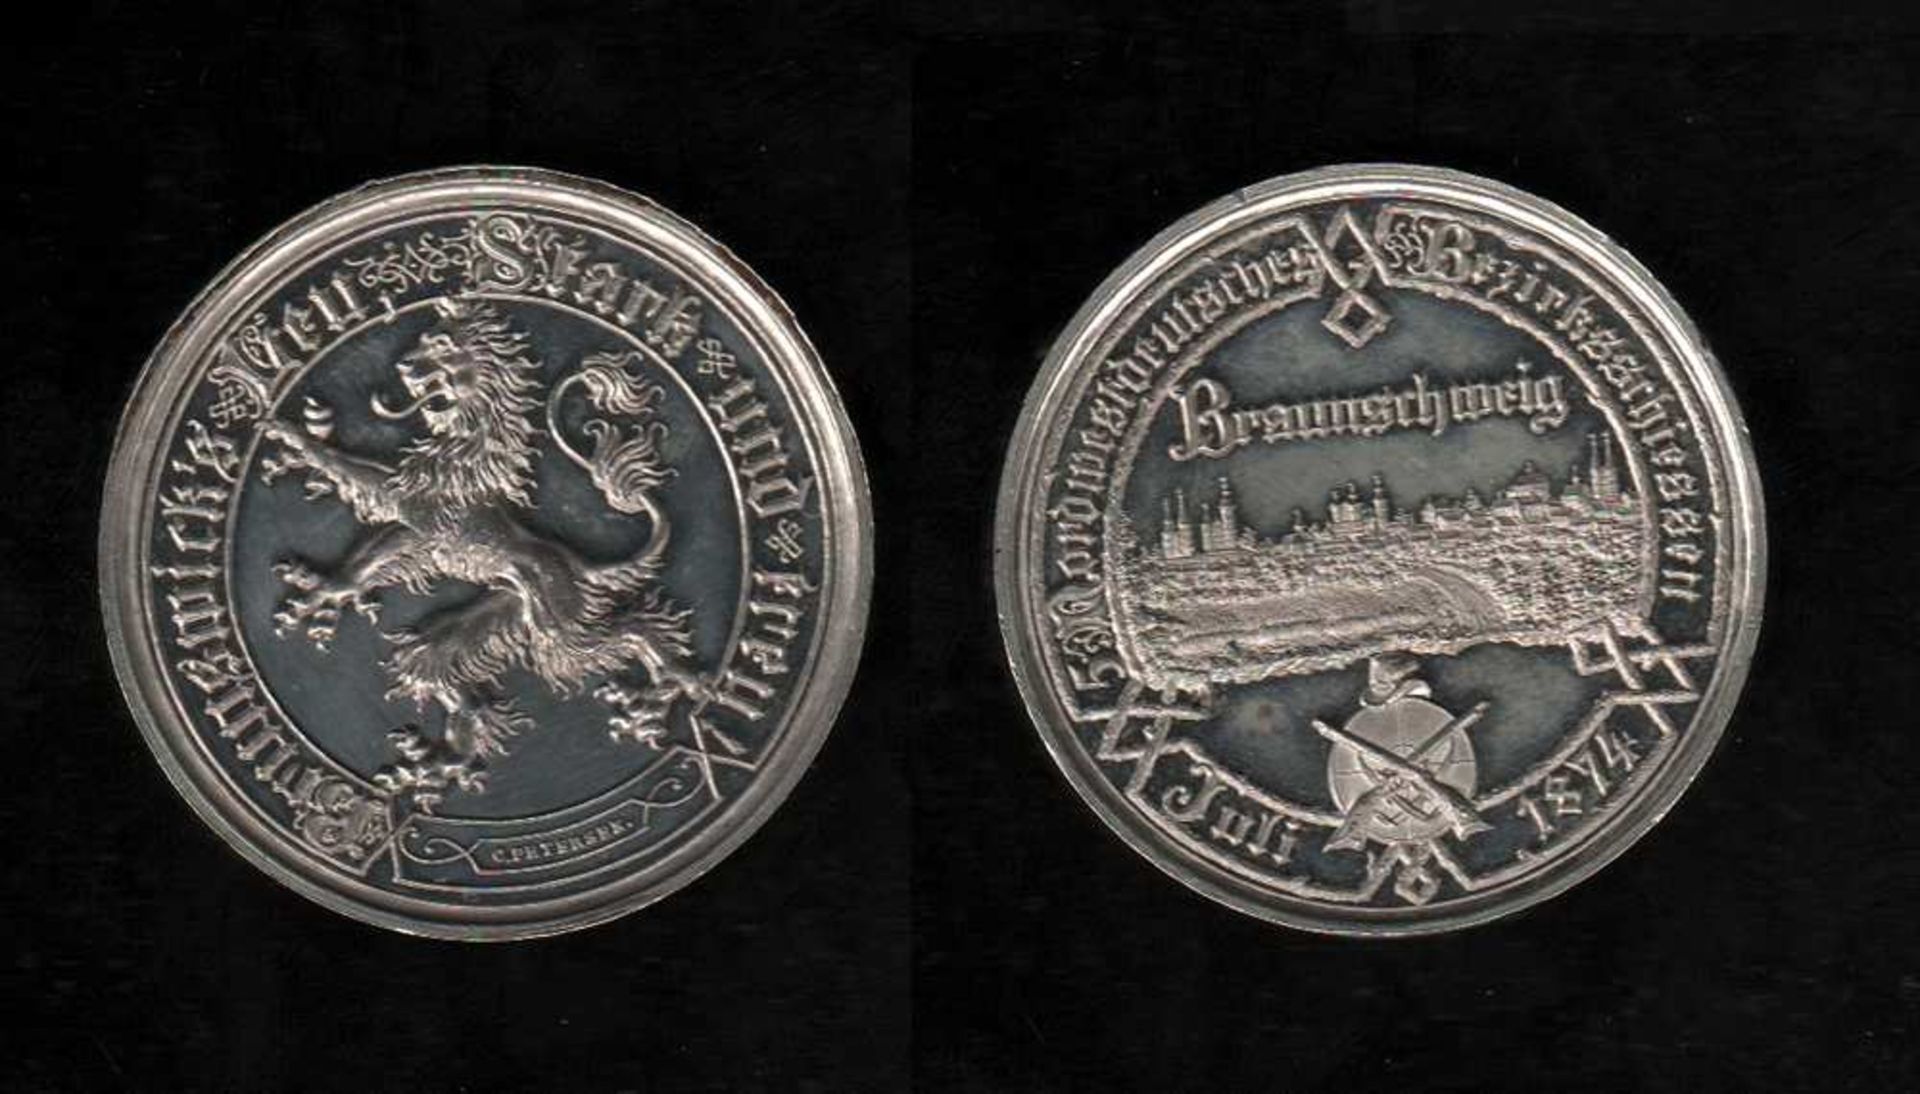 # Braunschweig. Medaille zum 5. Nordwestdeutschen Bezirksschießen in Braunschweig Juli 1874. - Image 3 of 3